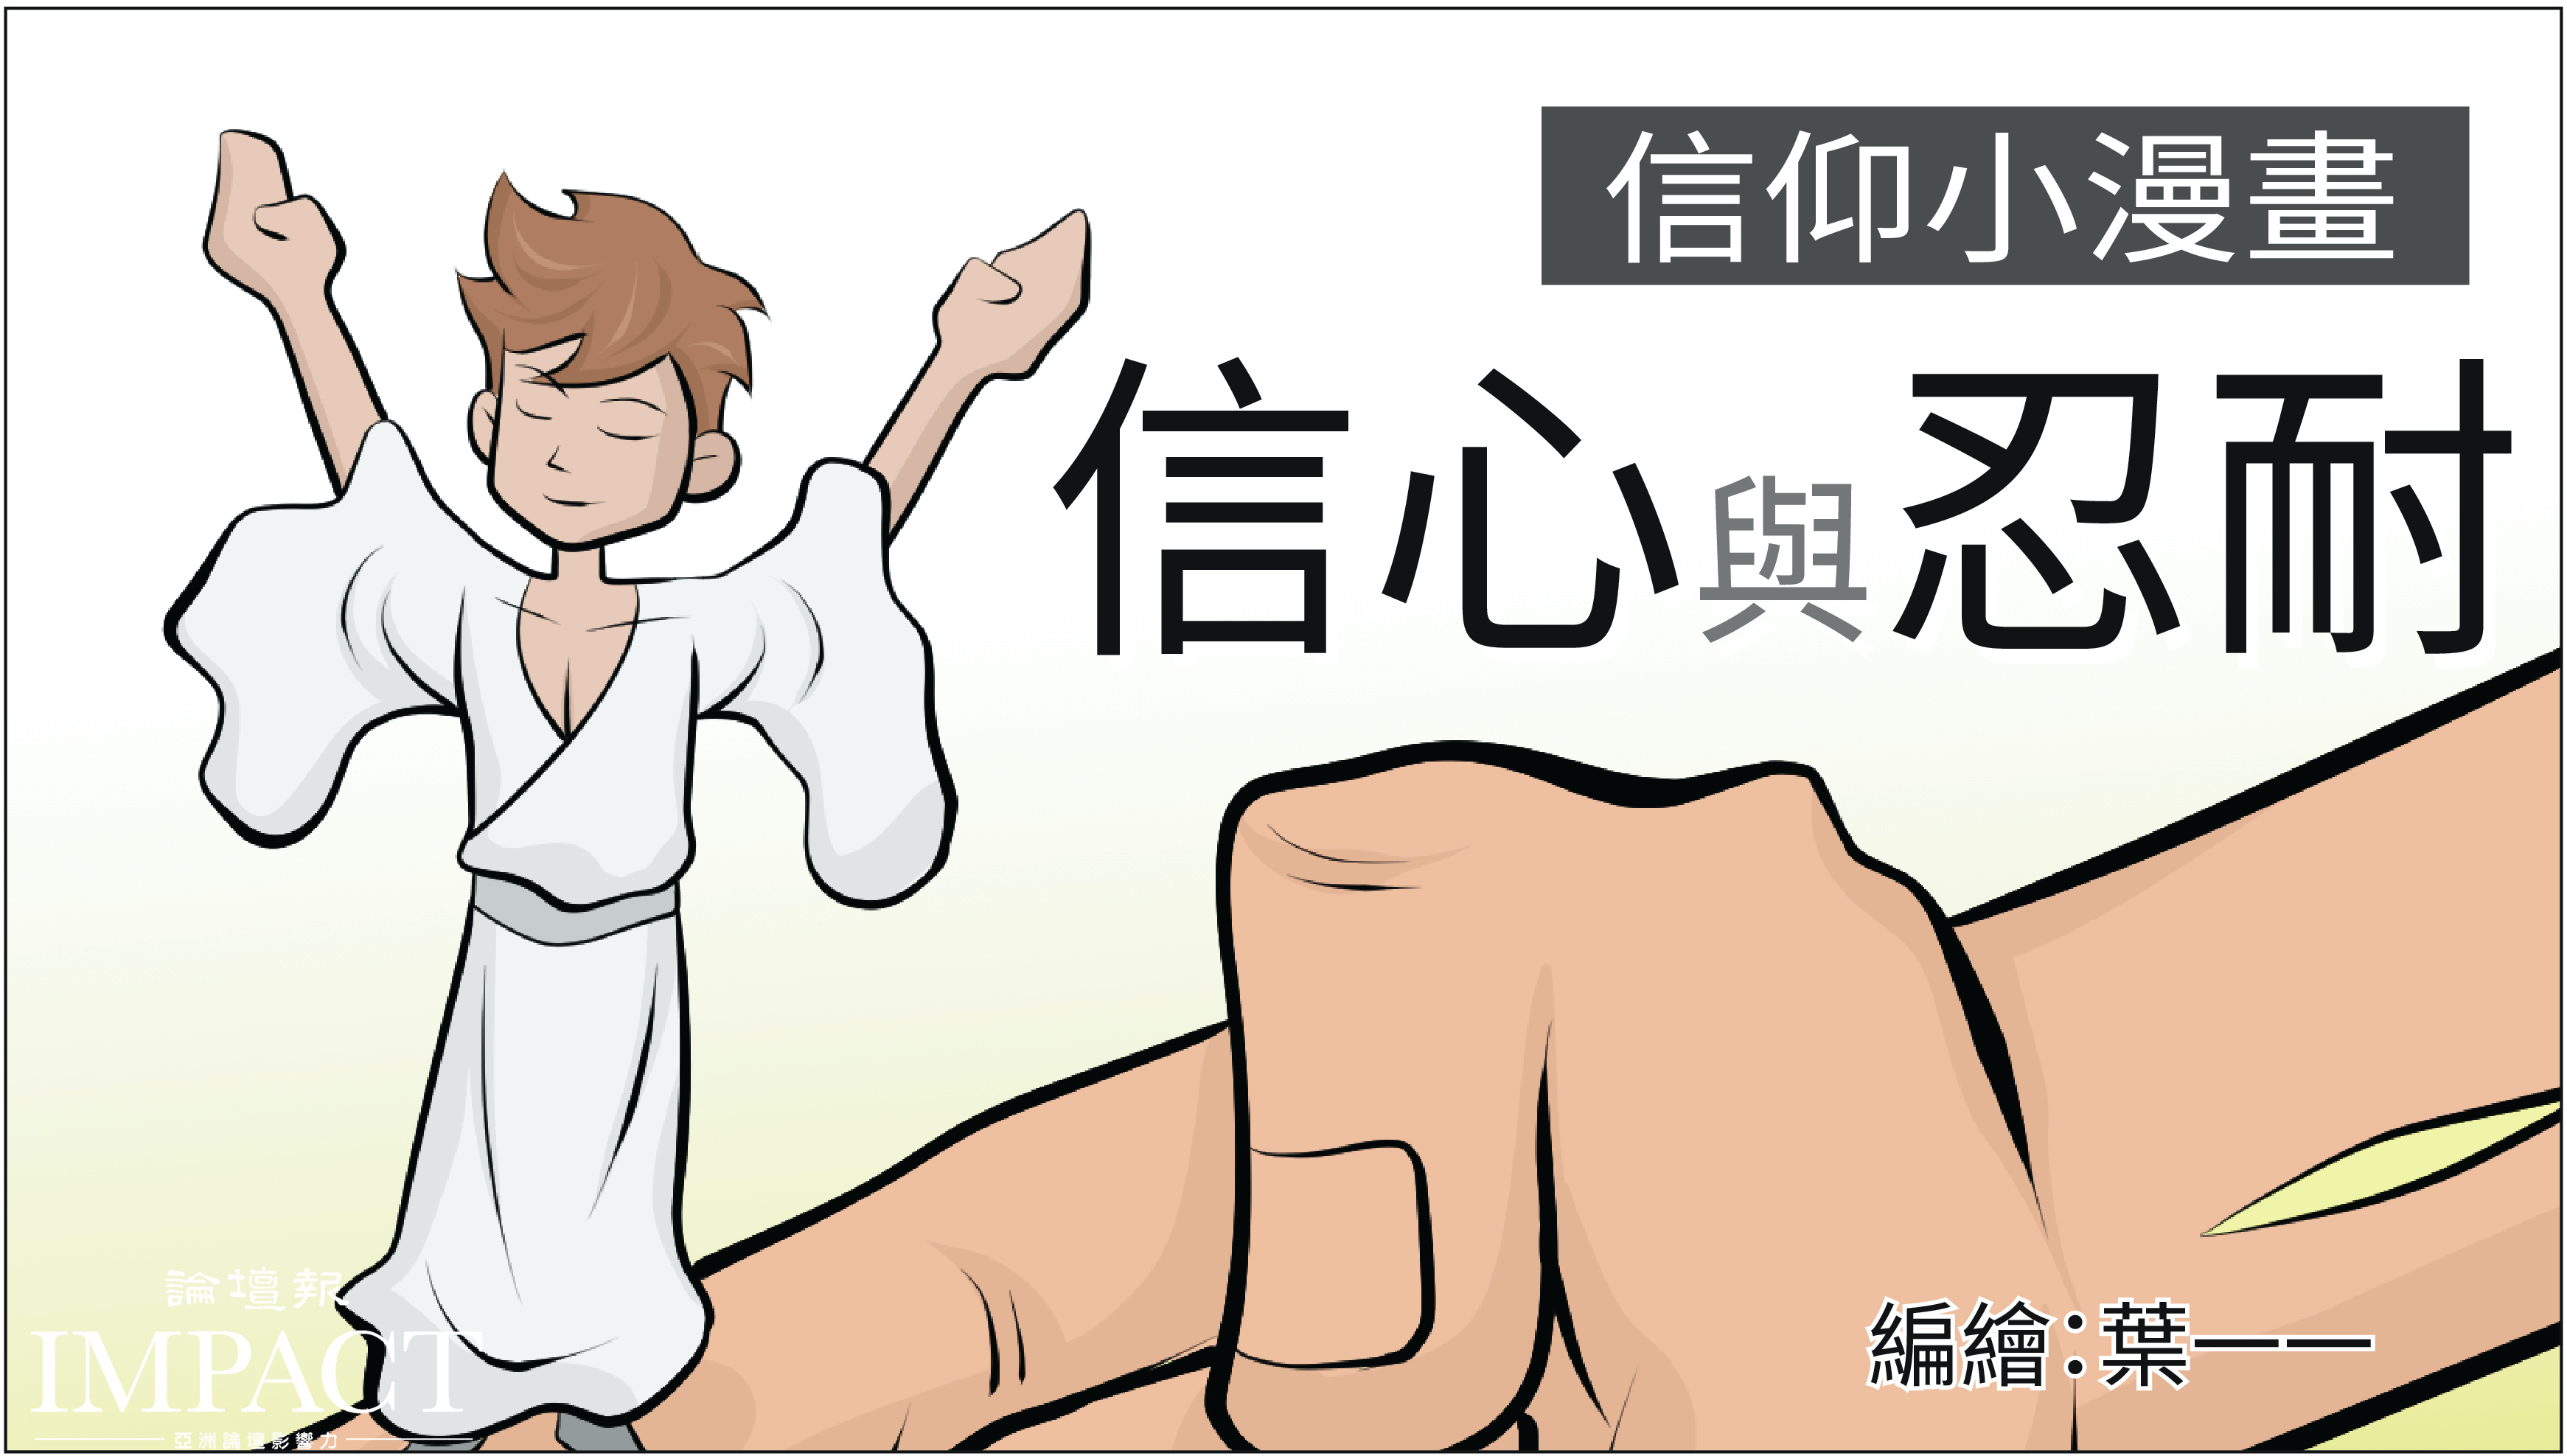 《信仰小漫畫53 - 求神應允》要向神不住禱告